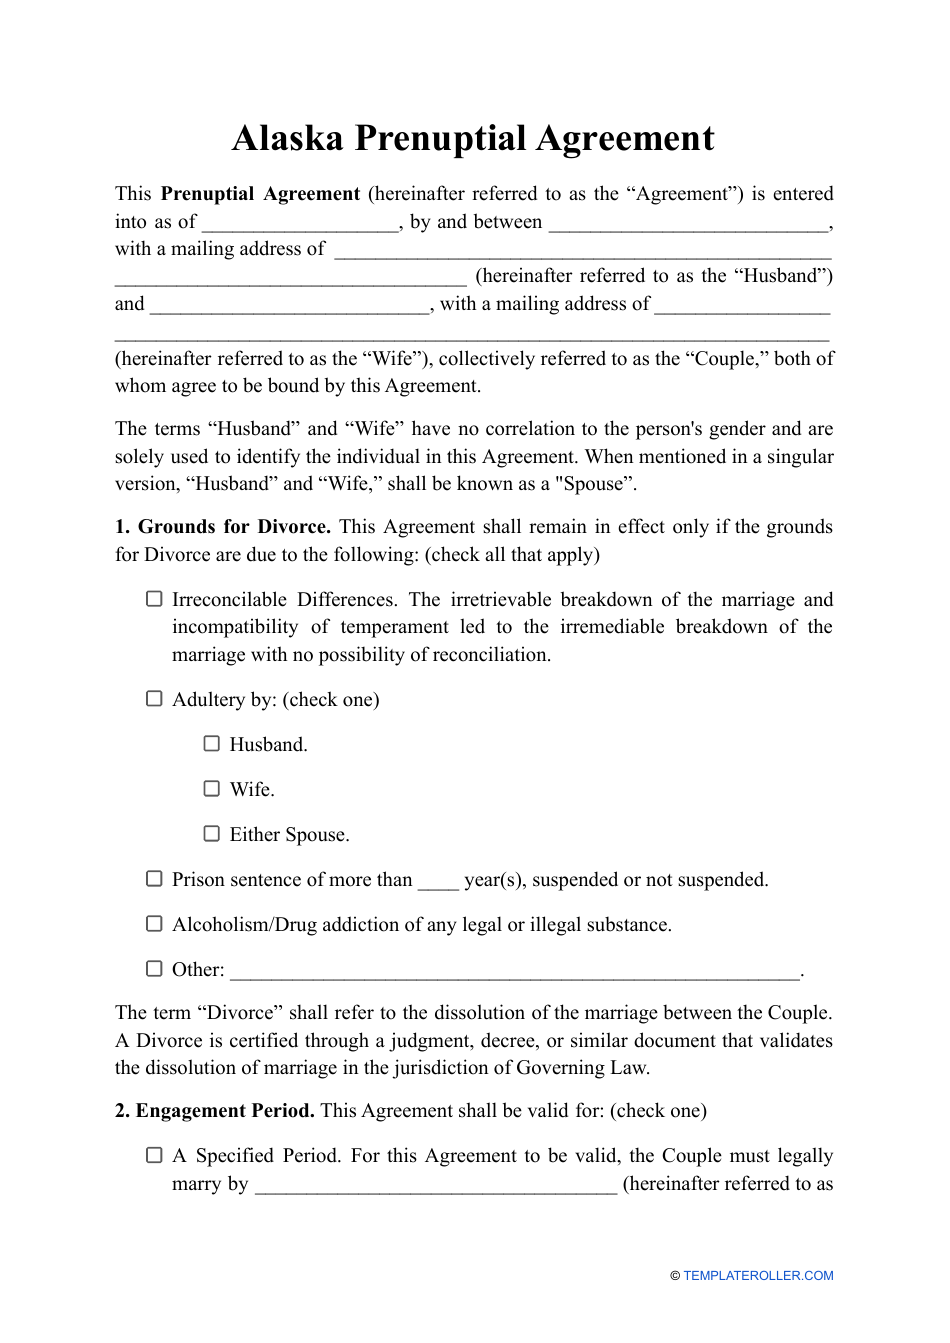 Prenuptial Agreement Template - Alaska, Page 1